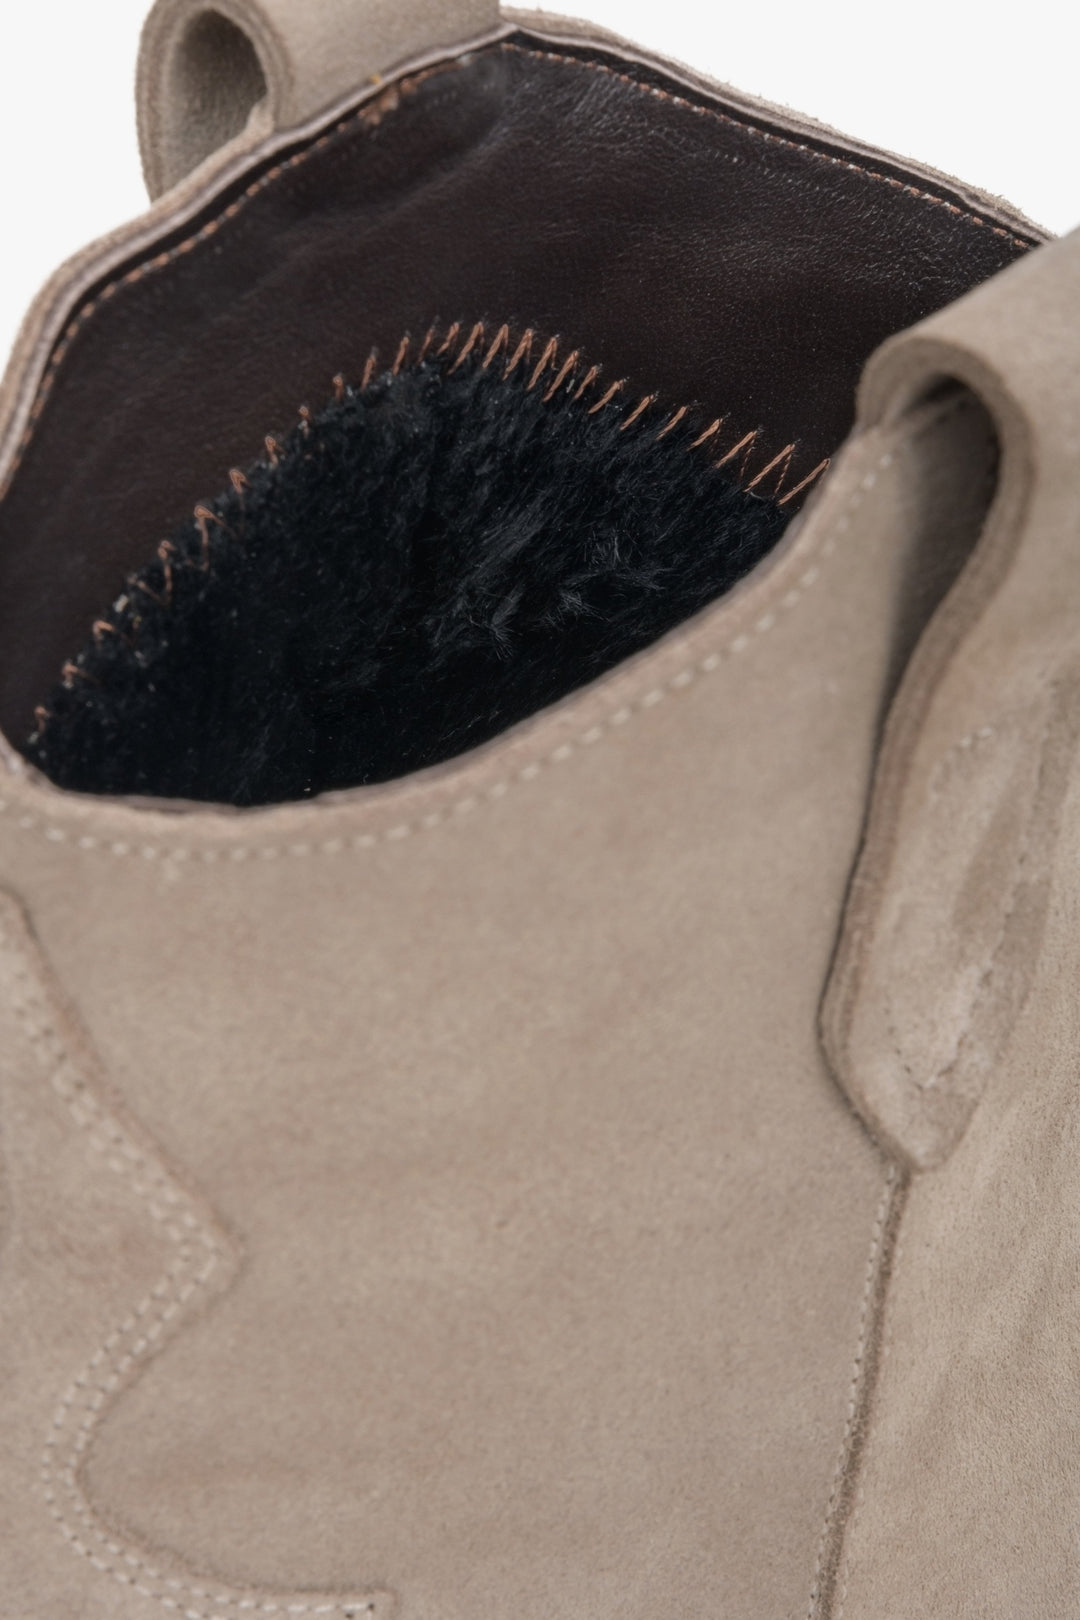 Women's beige velour cowboy boots by Estro - close-up on details.